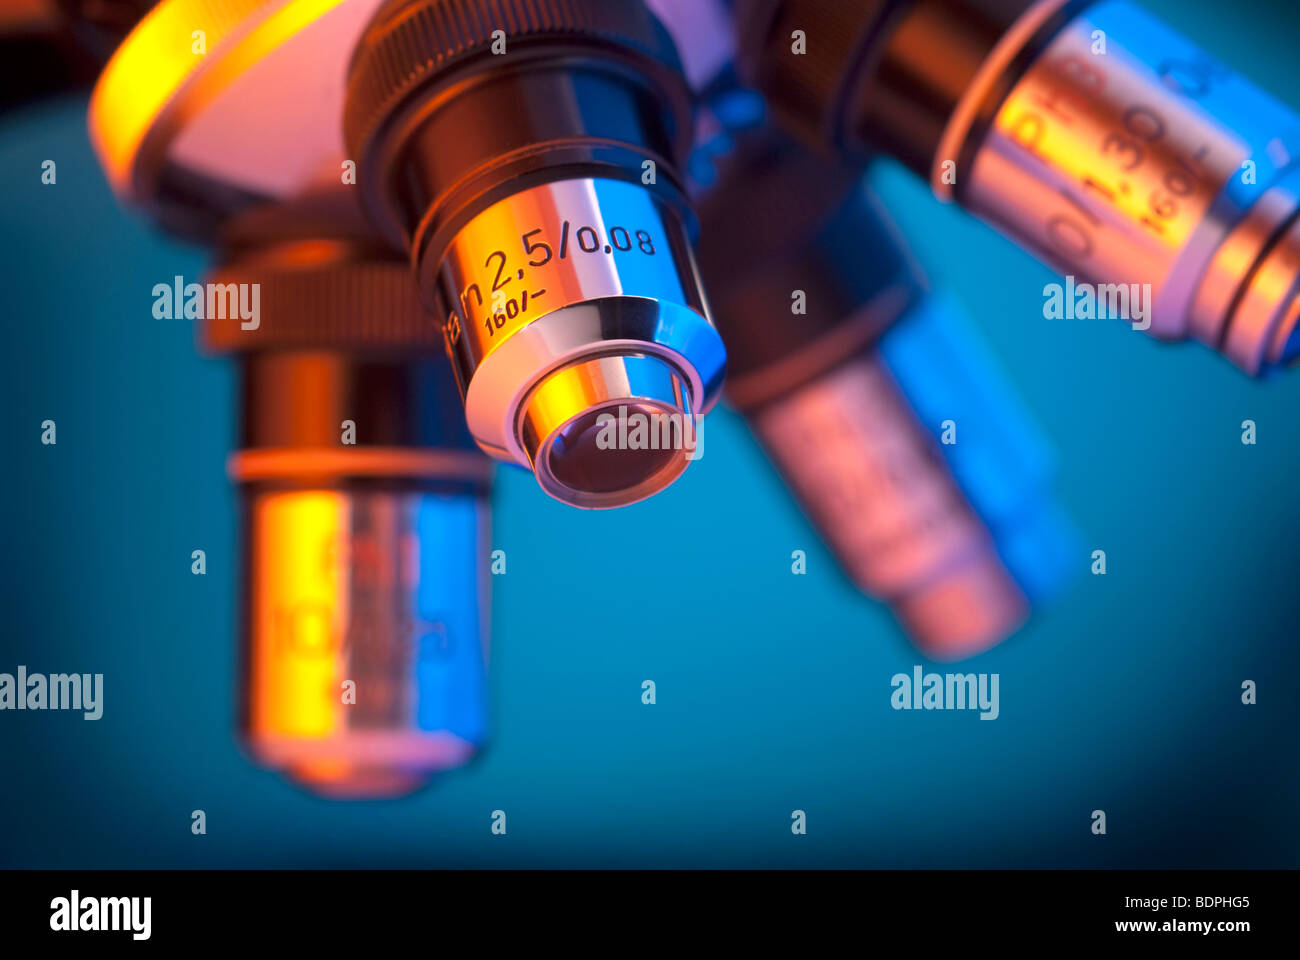 Cerca de cuatro lentes clásicas torreta del microscopio iluminado por luces naranja y cian Foto de stock